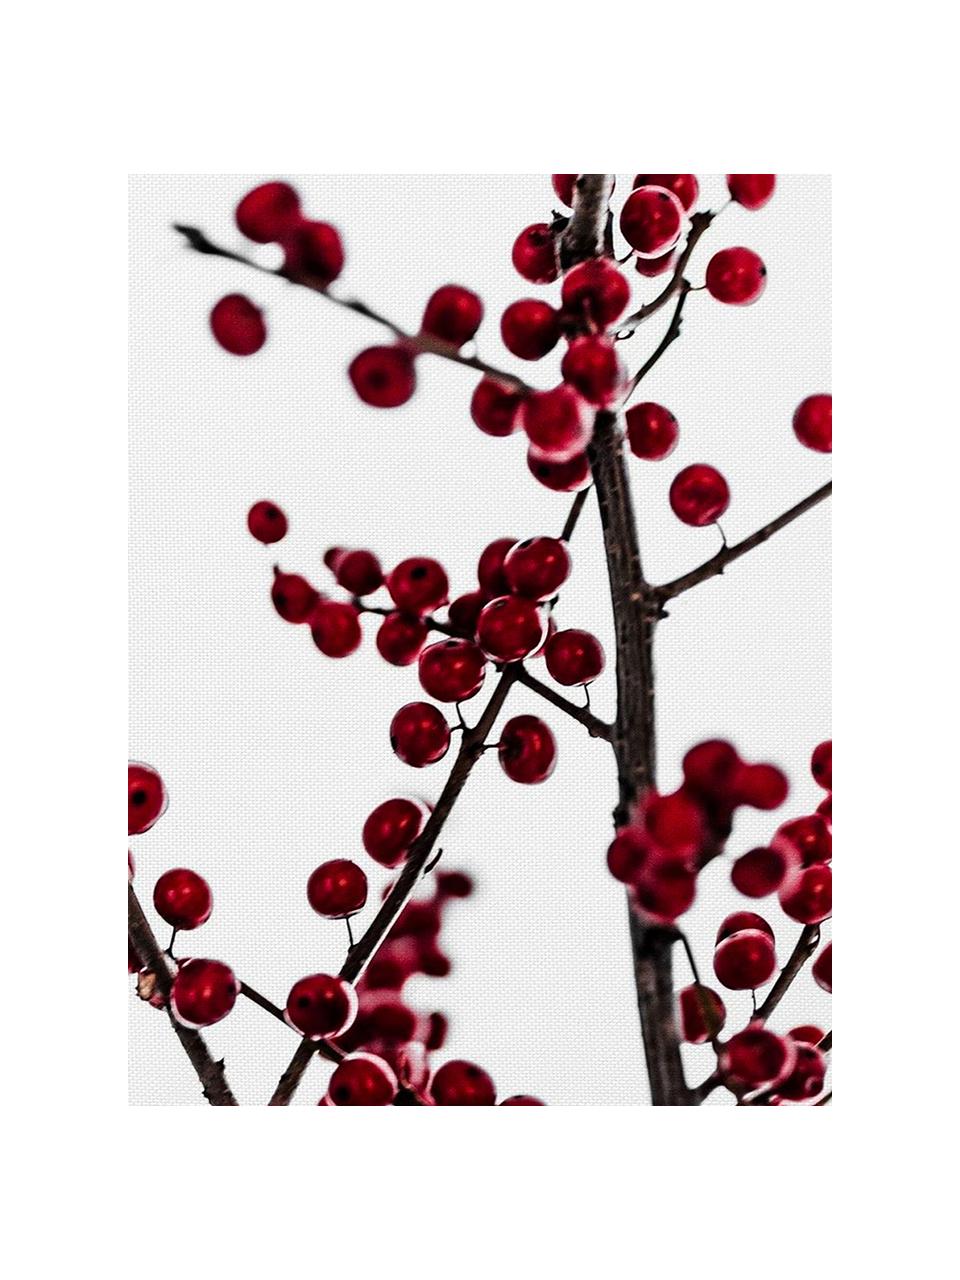 Stoffservietten Red Berries, 4 Stück, Baumwolle, Weiss, Rot, Schwarz, 40 x 40 cm